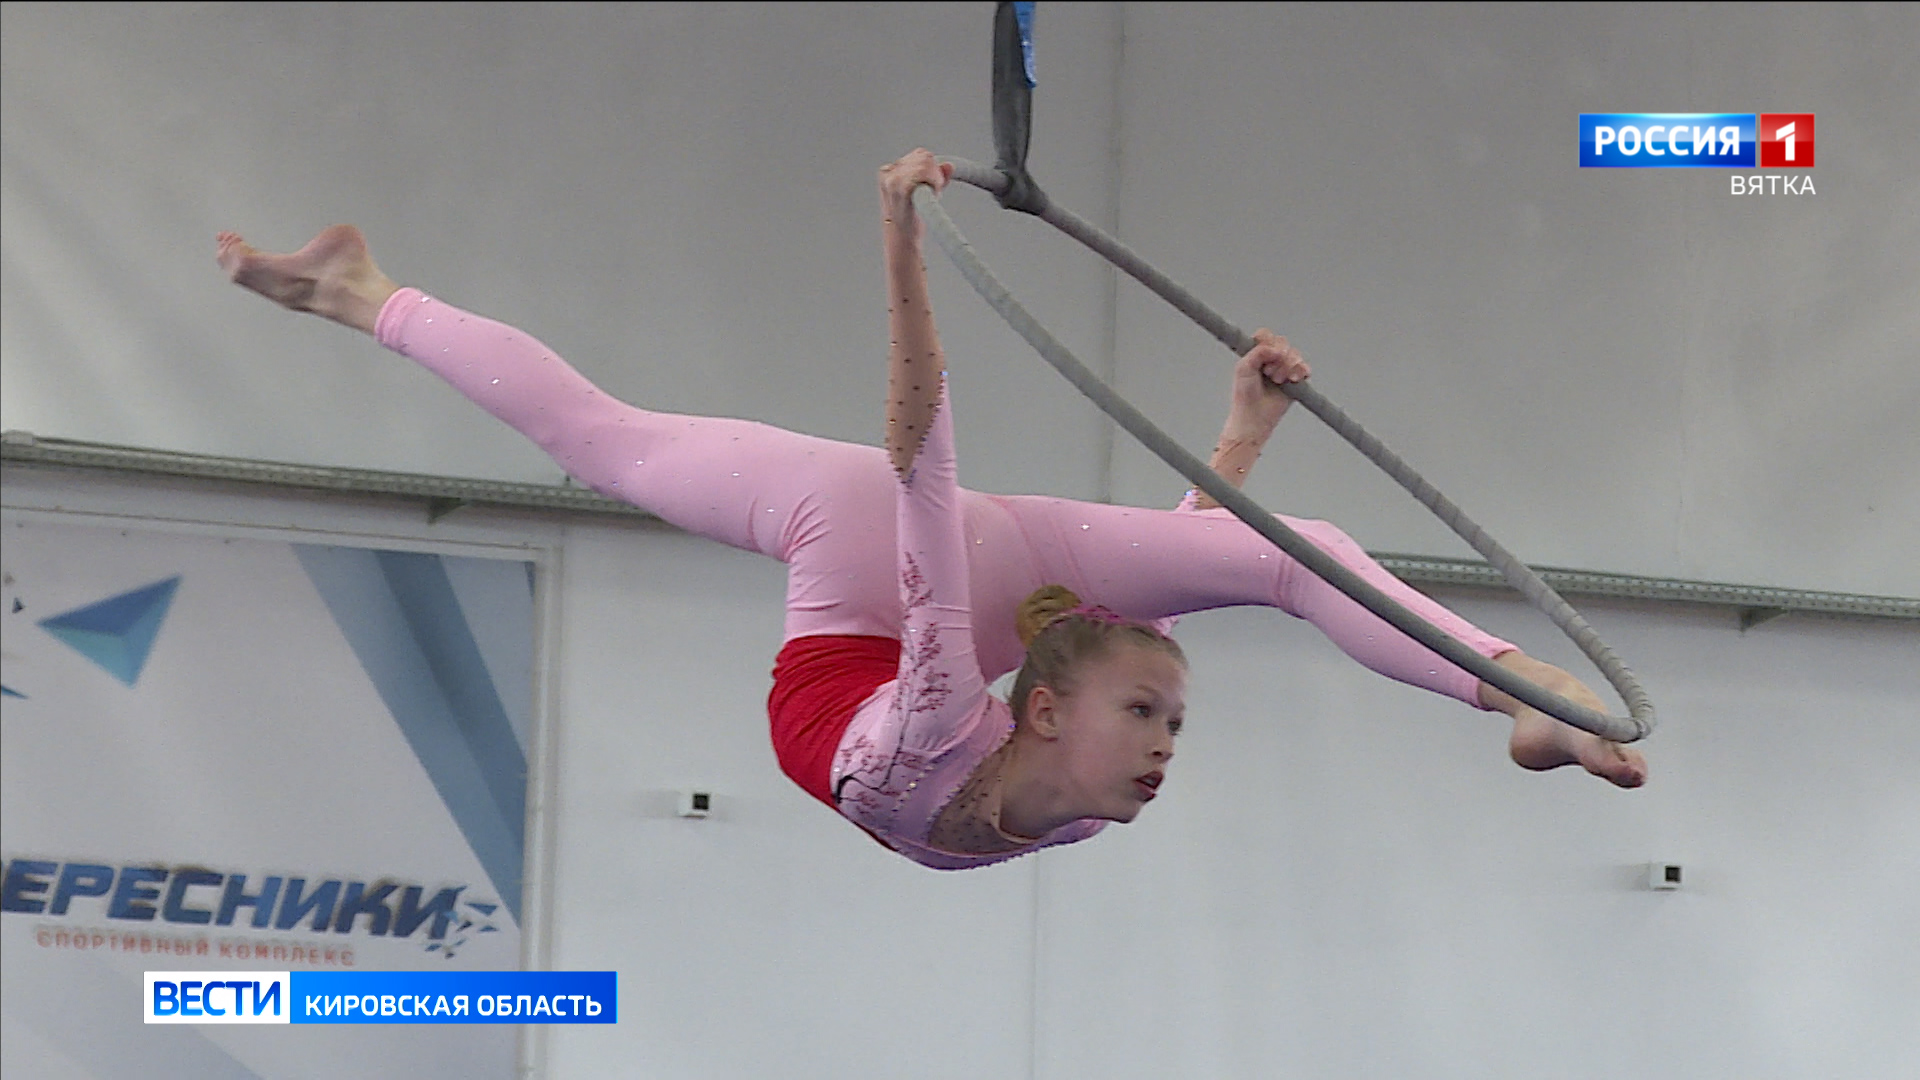 В Кирове состоялся первый официальный Чемпионат и Первенство области по воздушной акробатике